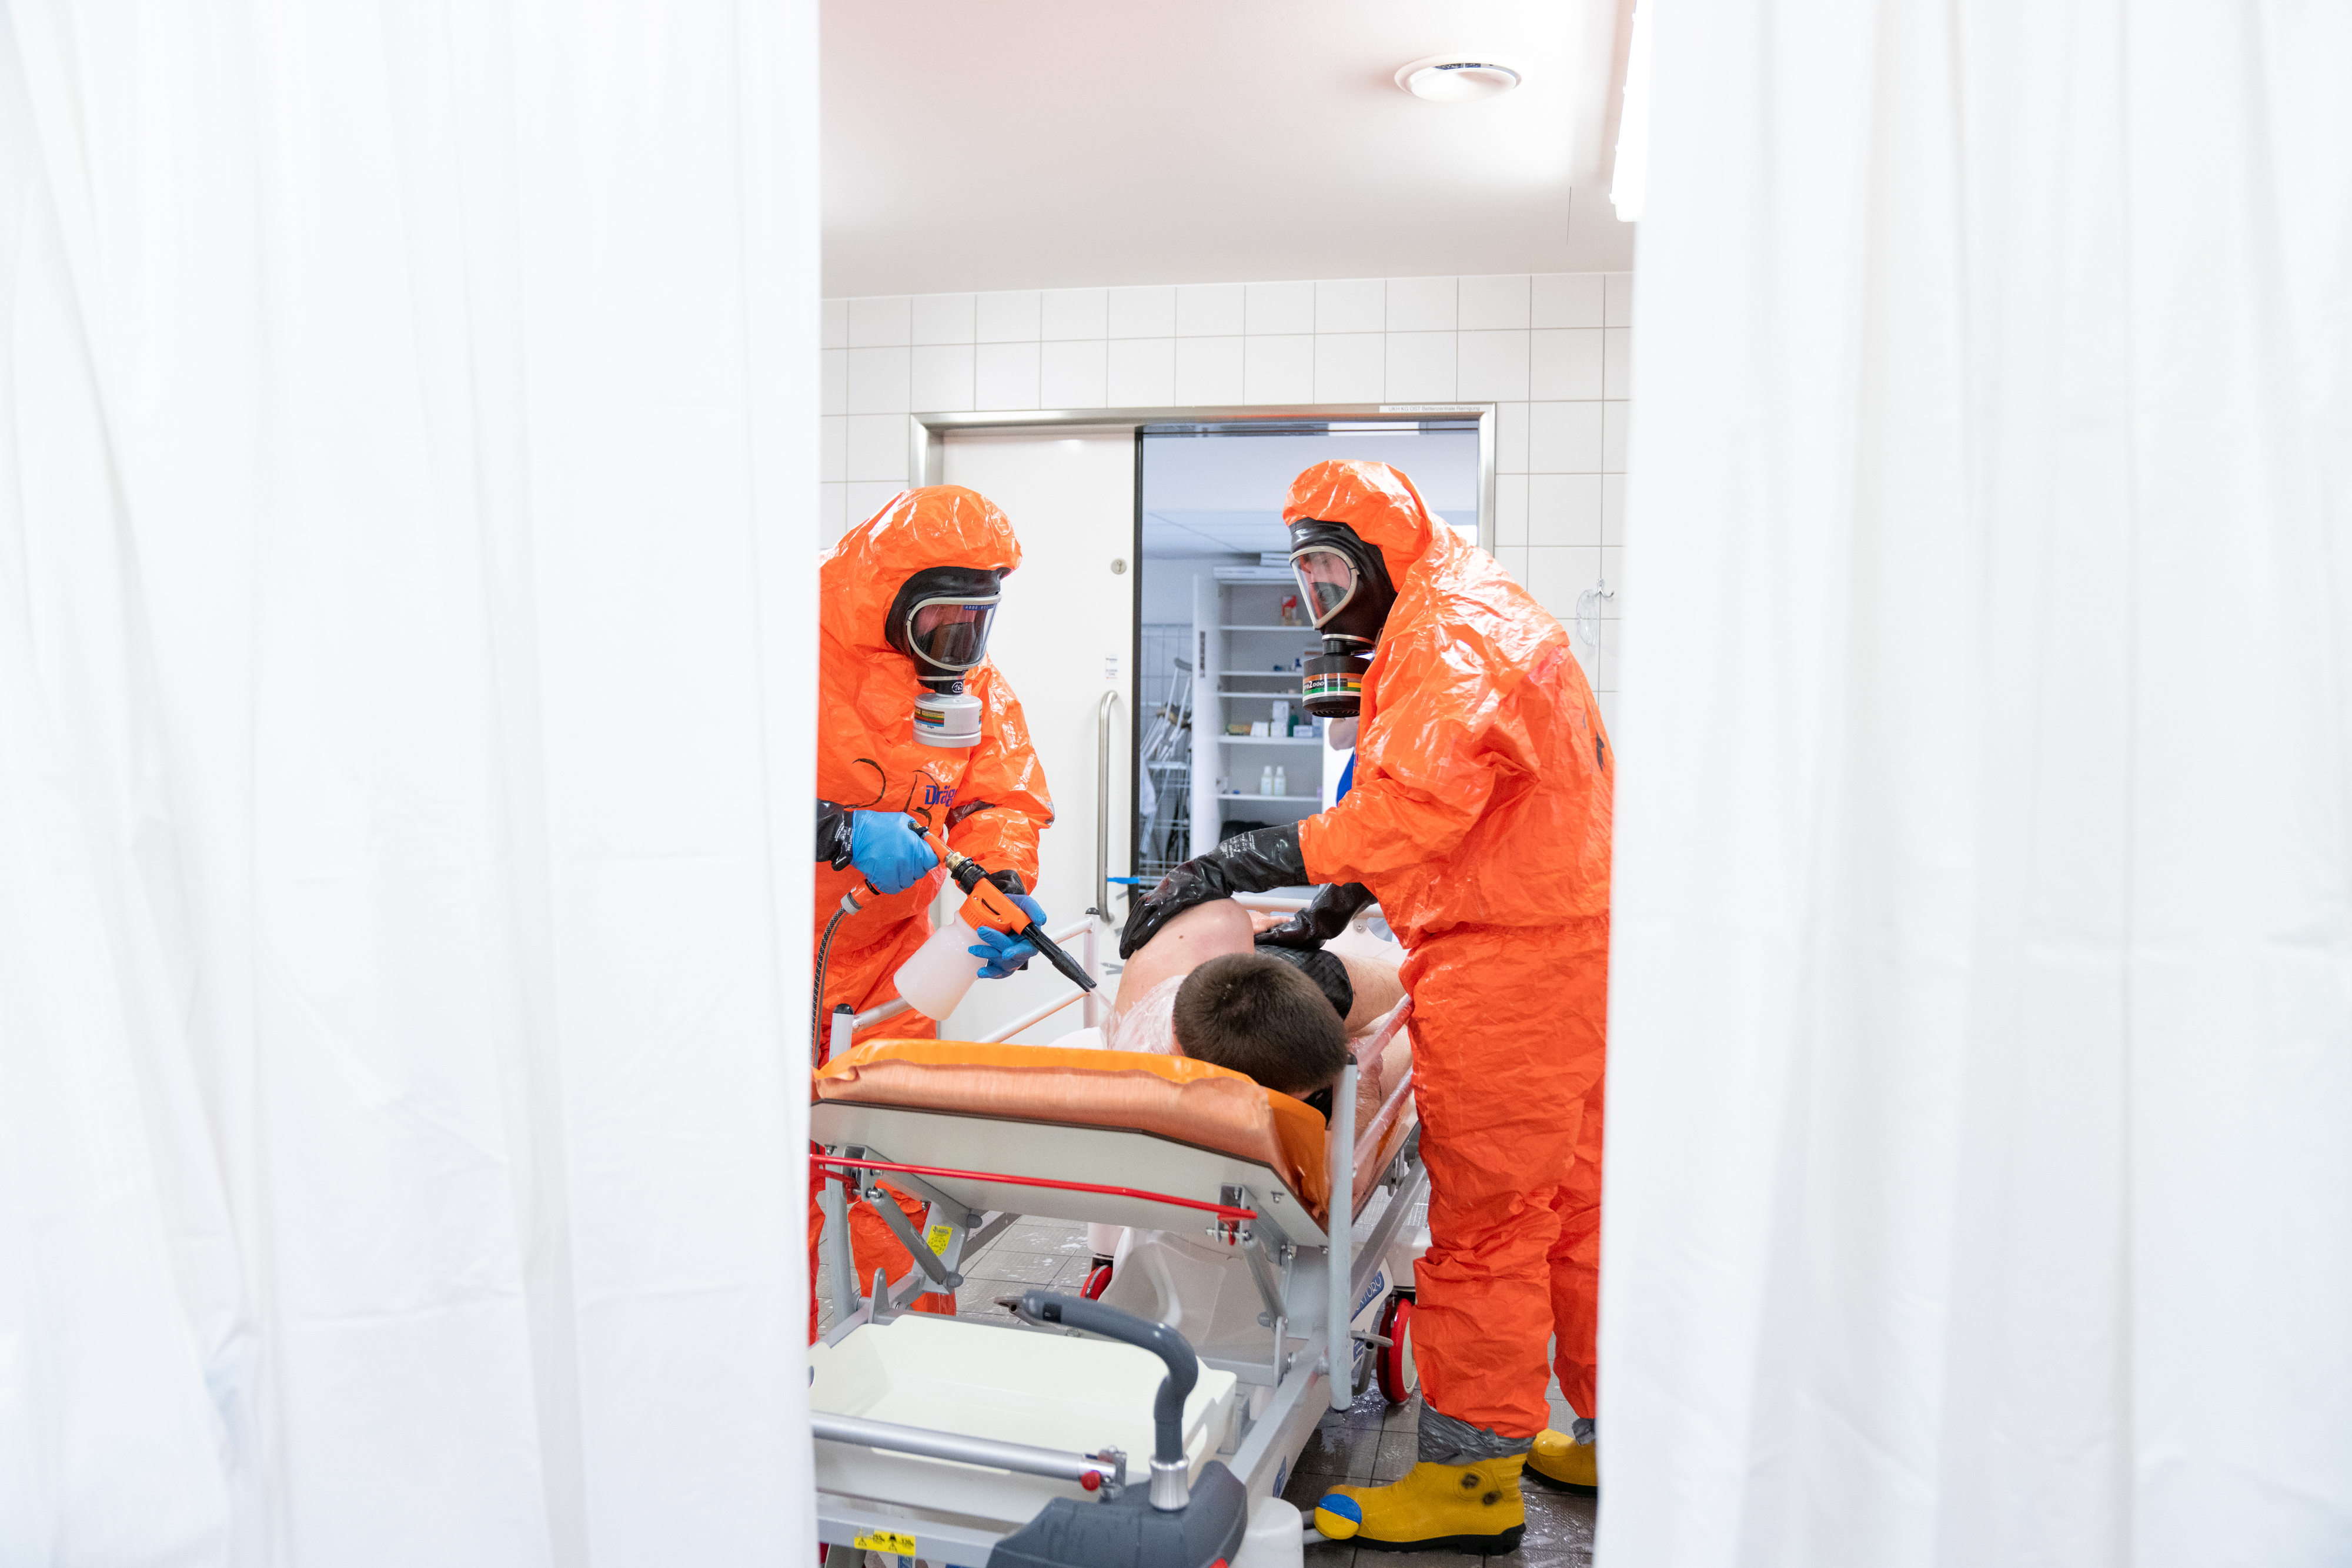 Mitarbeiter:innen des Katastrophenschutzes reinigen/dekontaminieren einen Patienten.